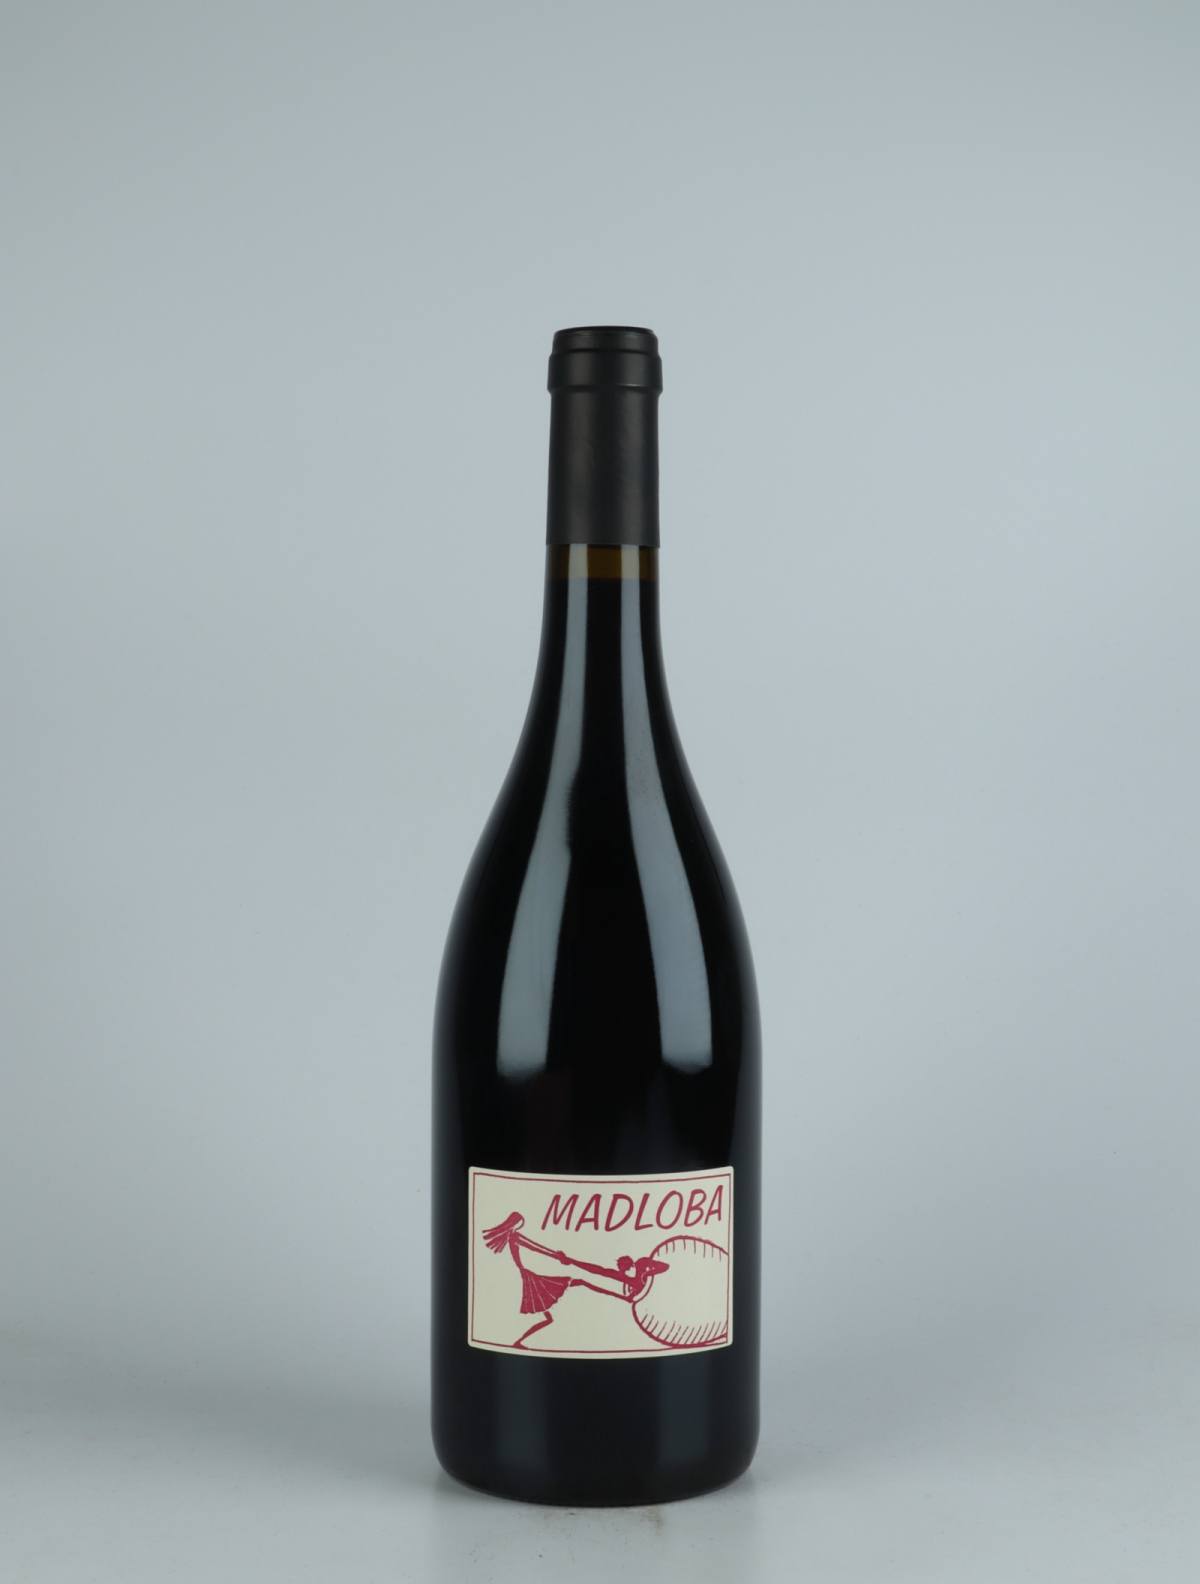 En flaske 2020 Saint-Joseph Madloba Rødvin fra Domaine des Miquettes, Rhône i Frankrig